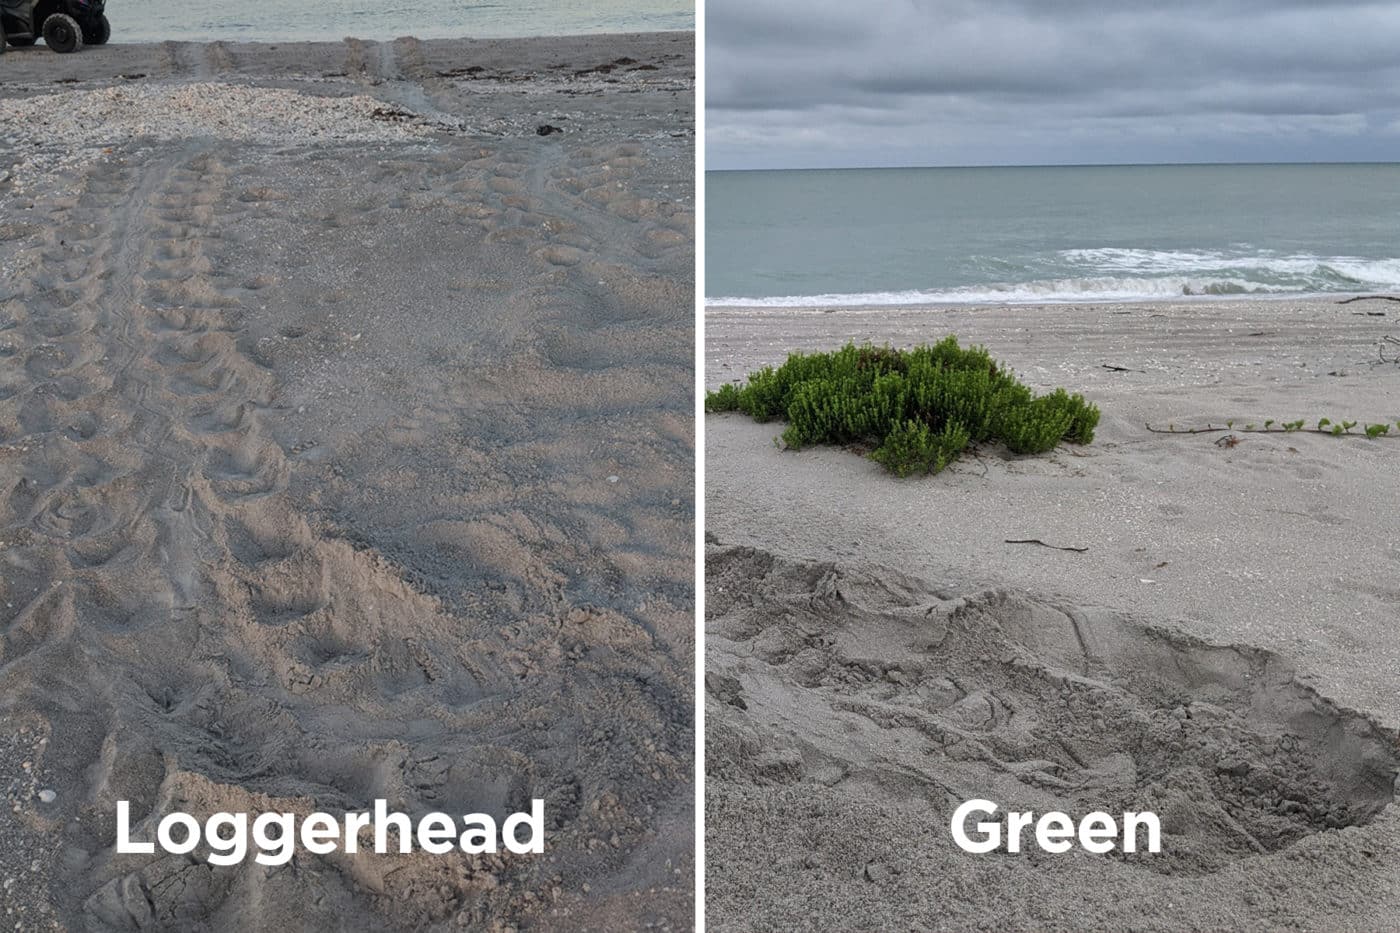 loggerhead versus green sea turtle nest sites